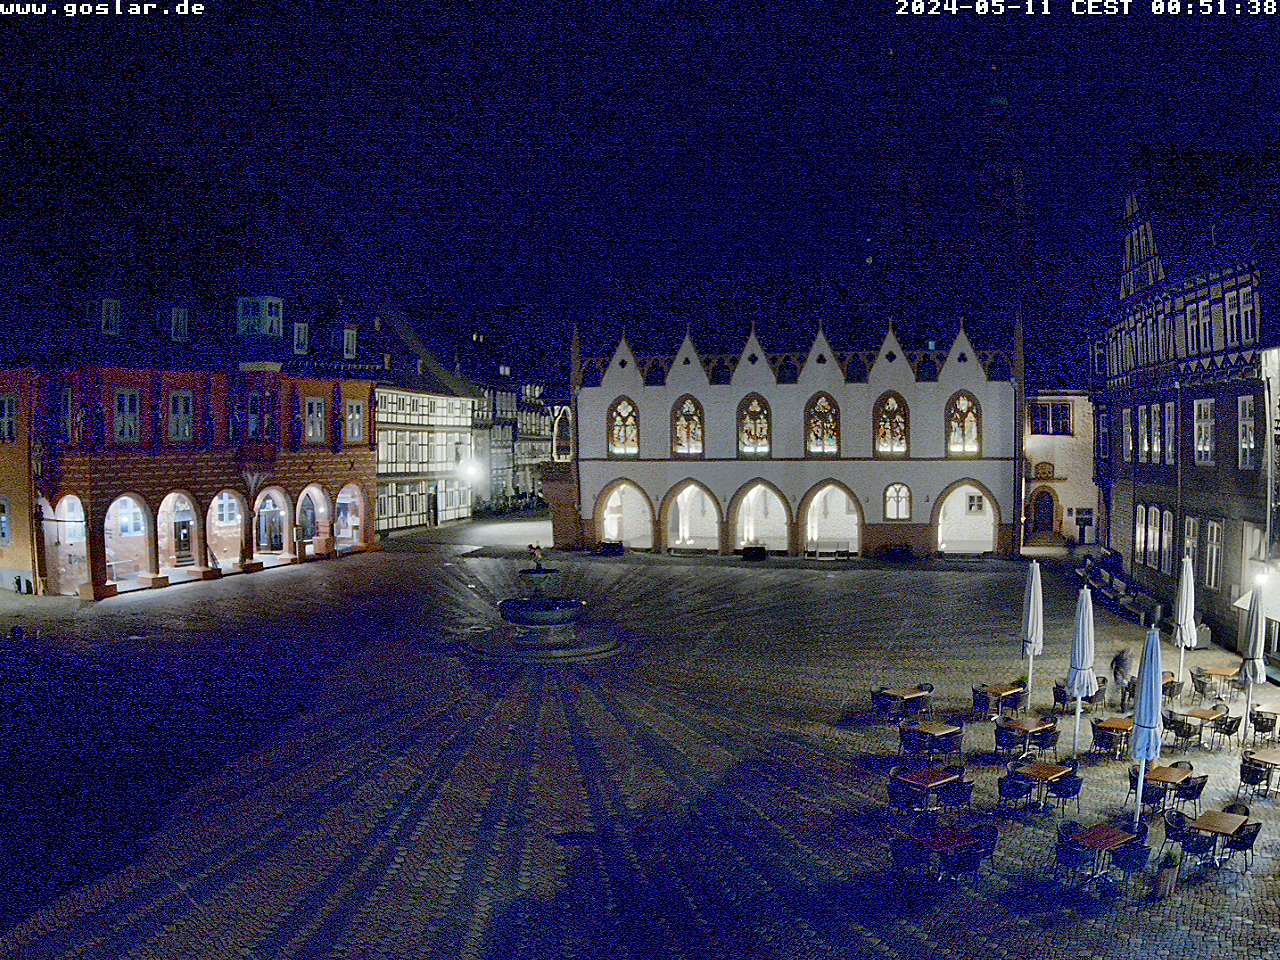 Goslar Mer. 00:51